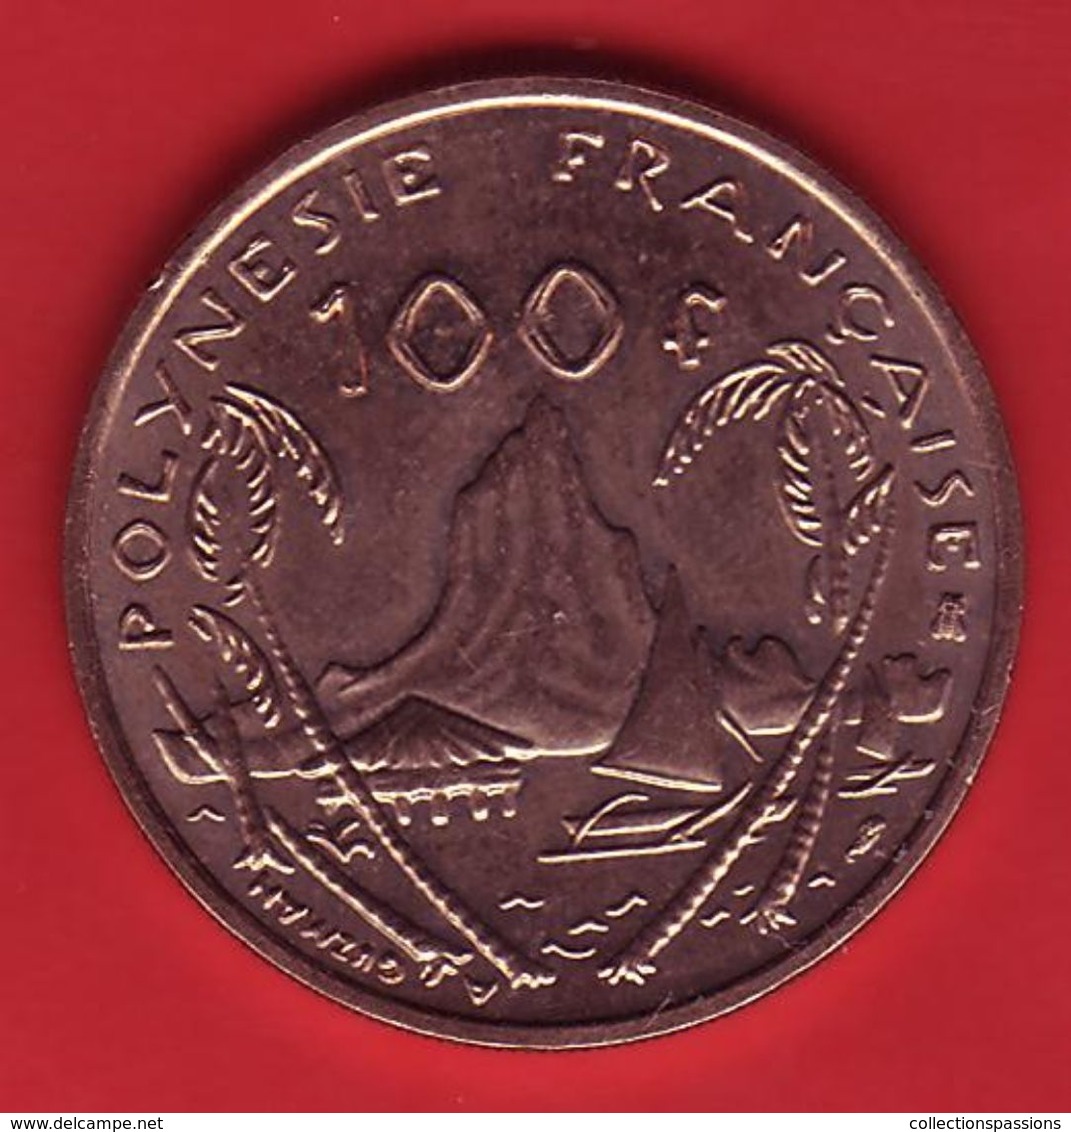 - POLYNESIE FRANCAISE - 100 Francs - 1995 - - Polinesia Francesa